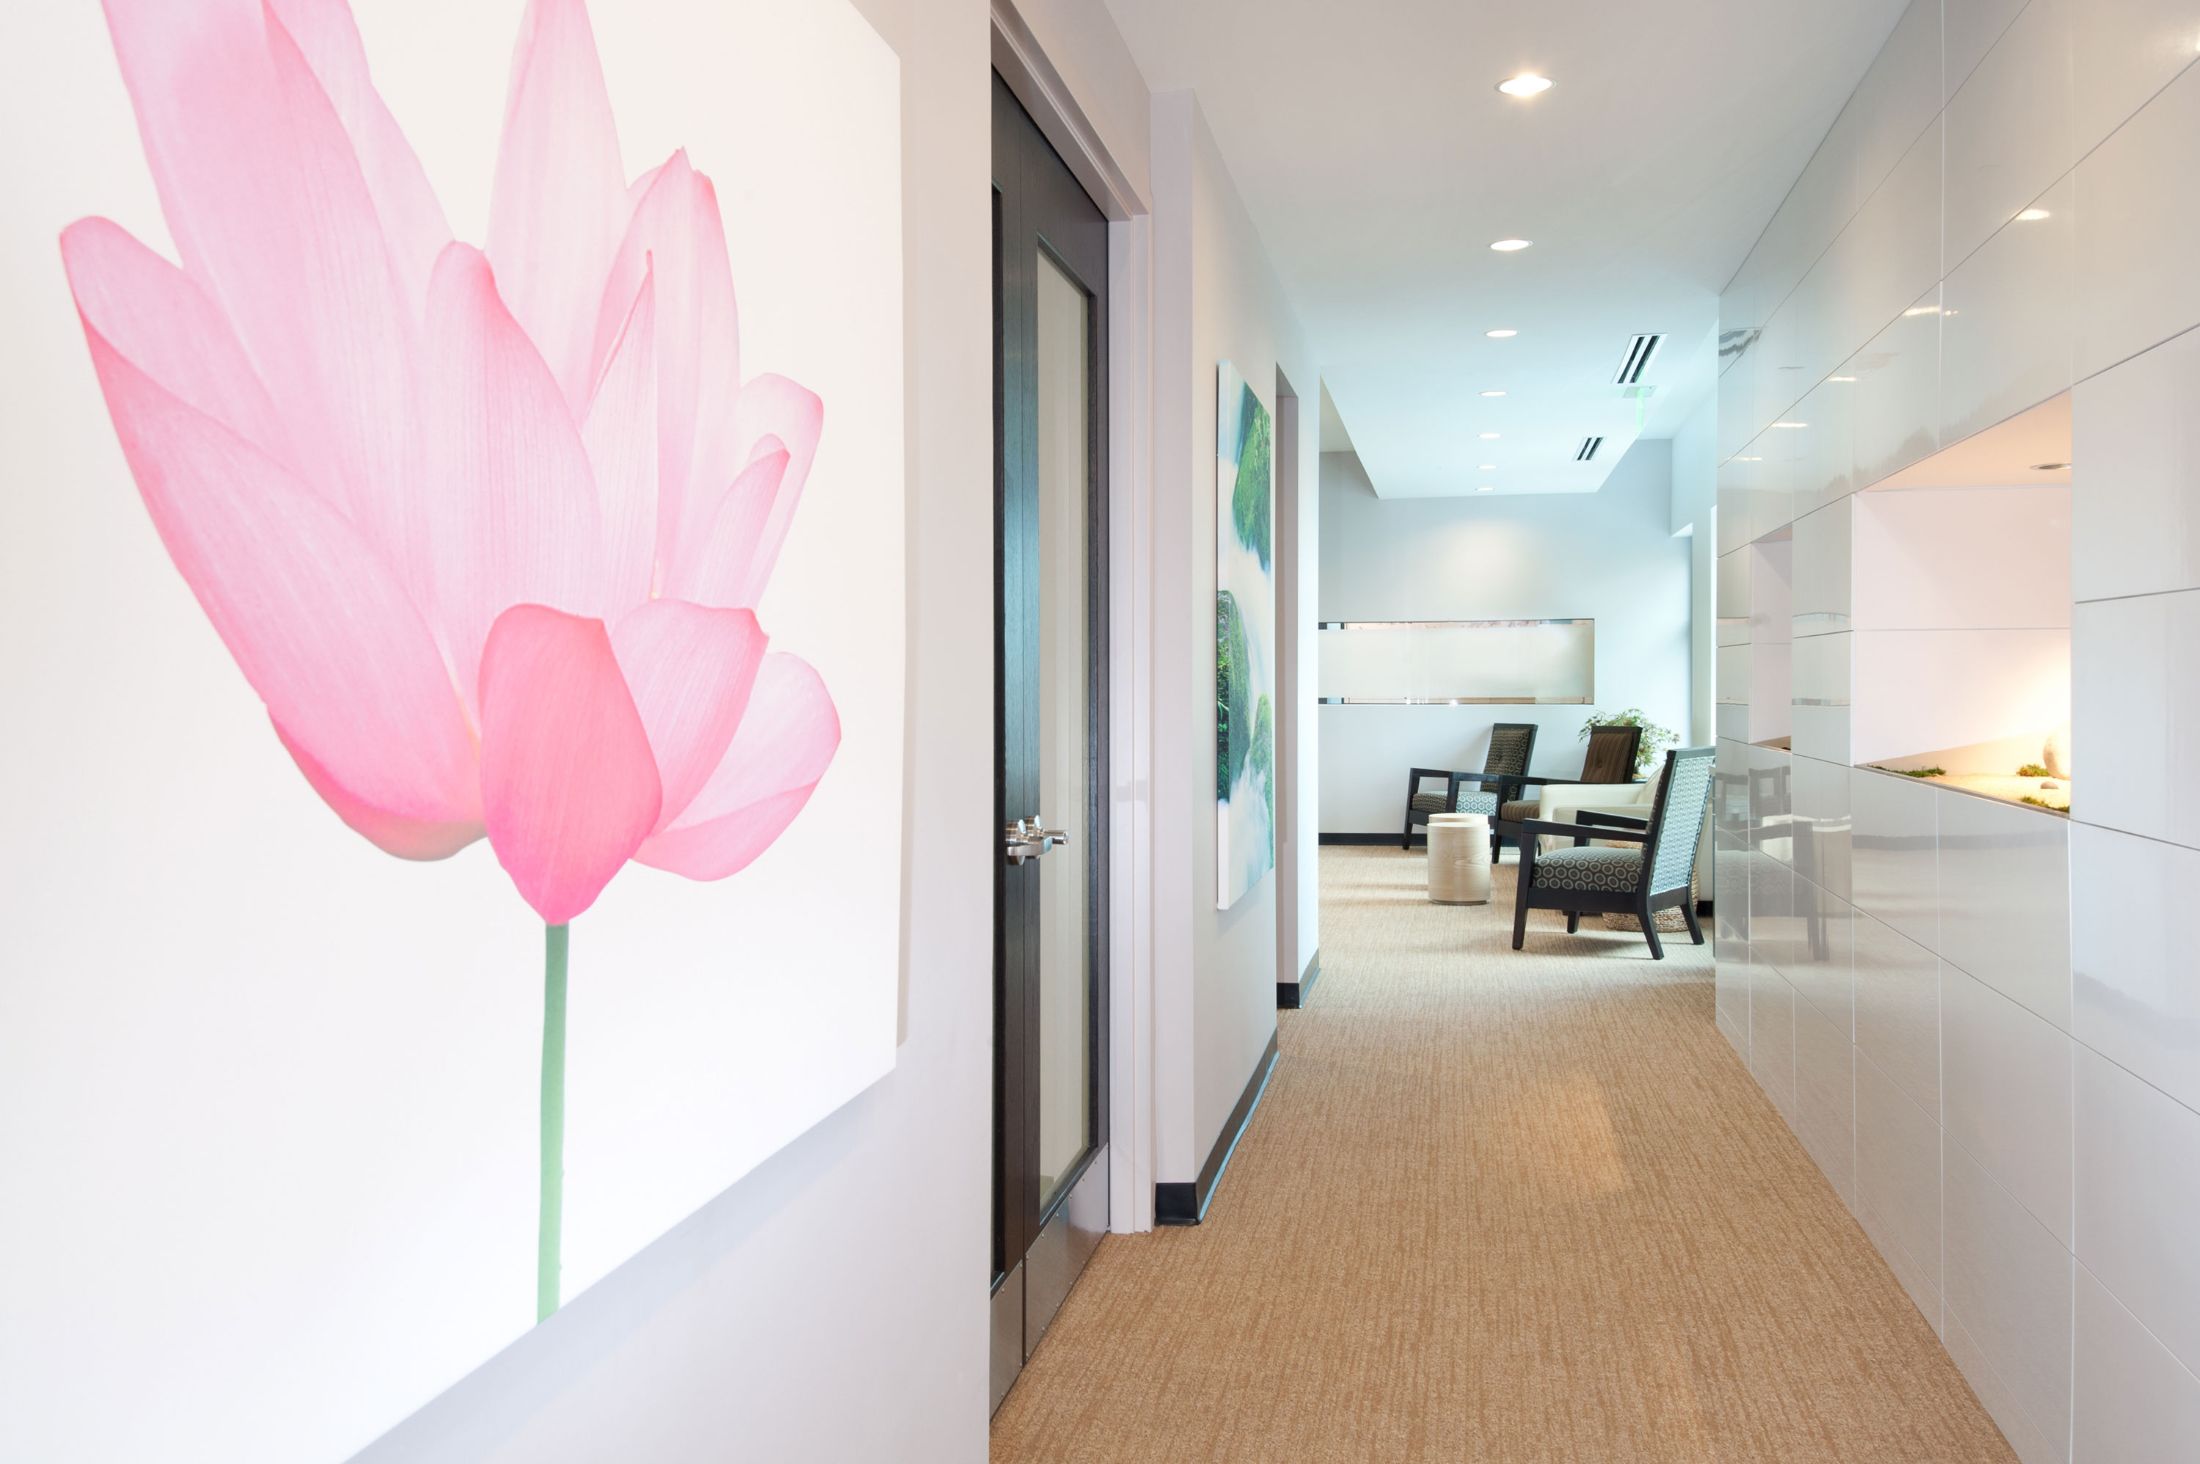 Lotus Dental Hallway